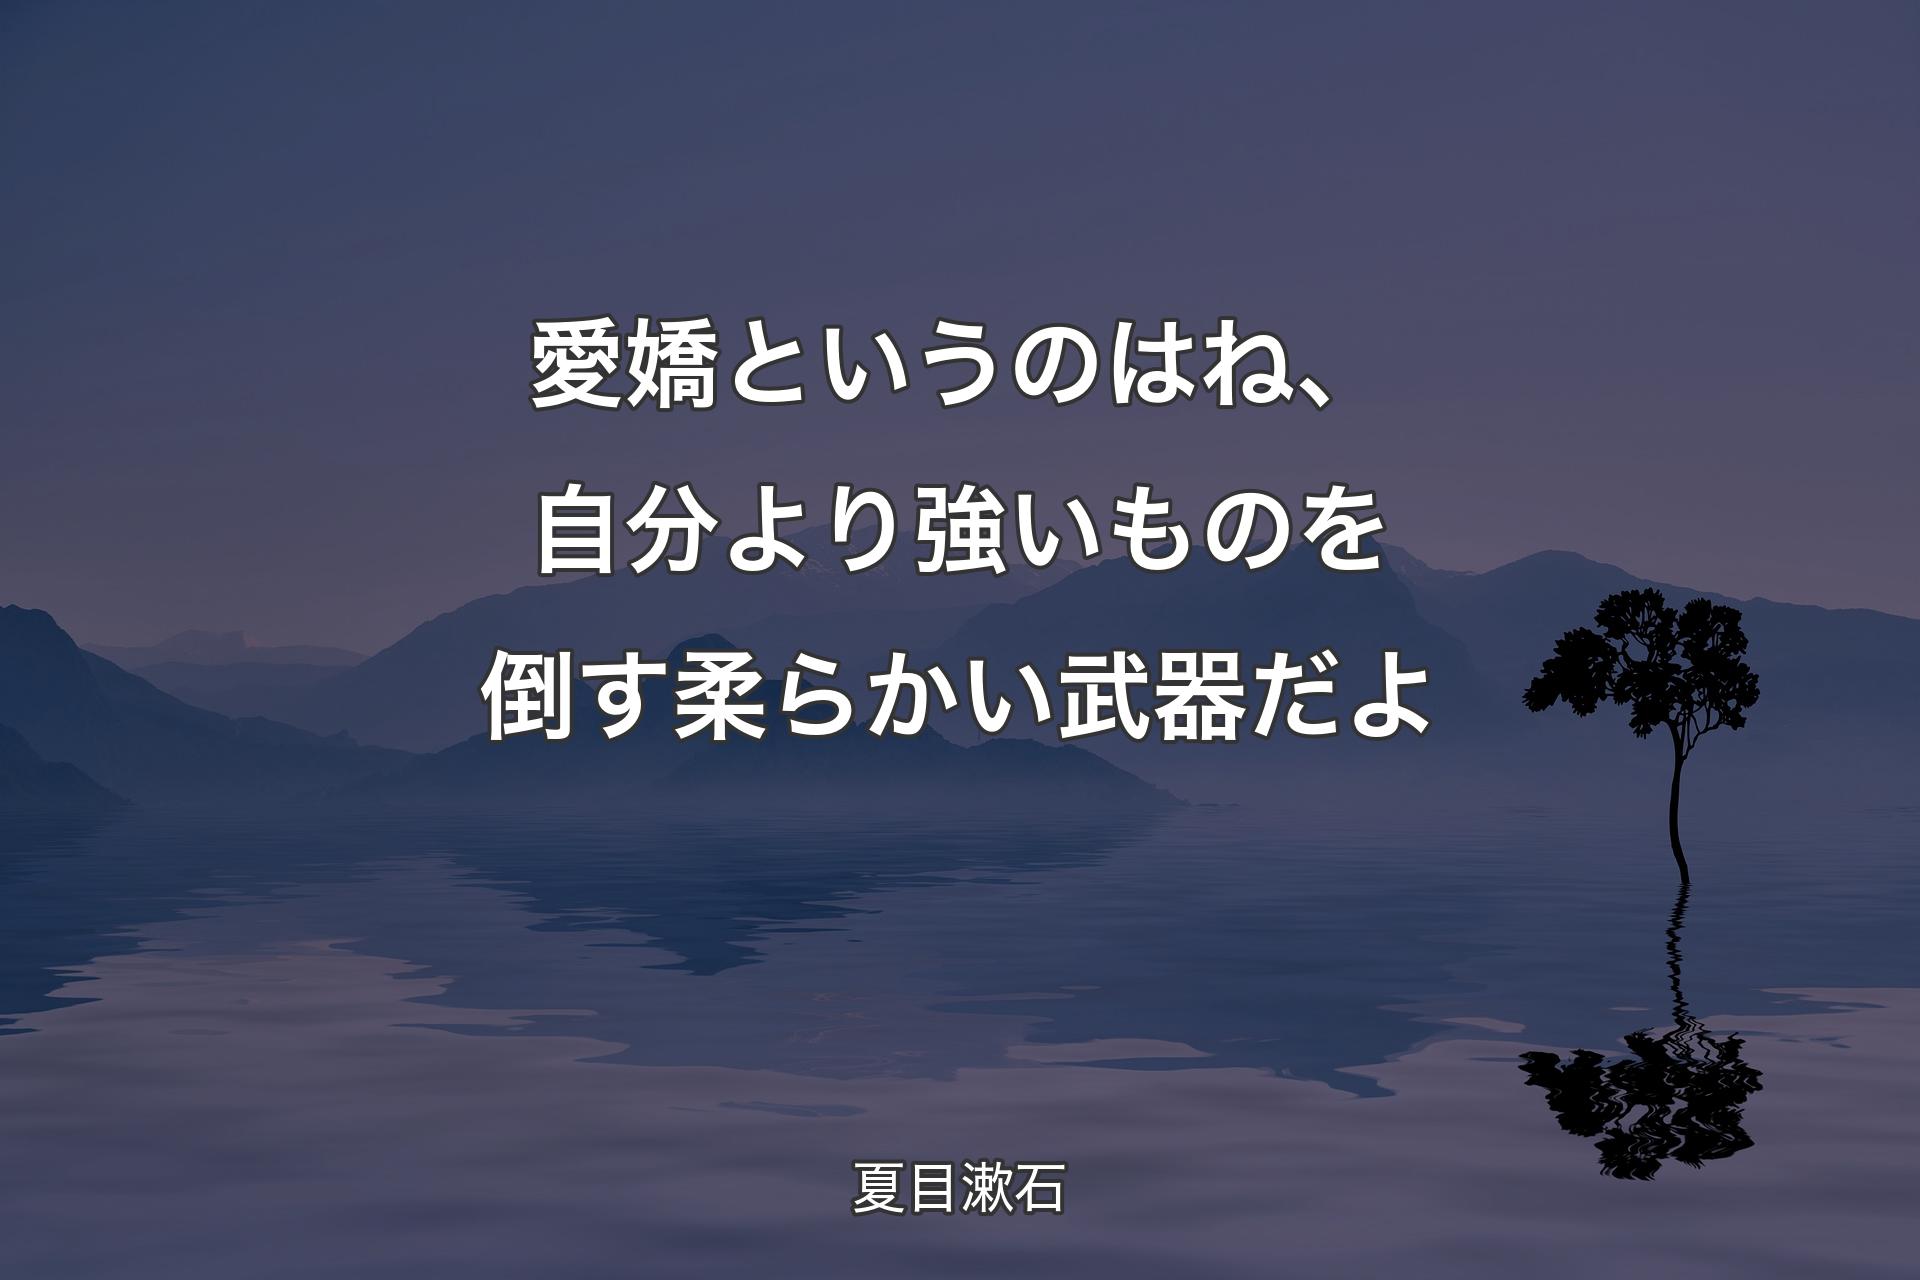 愛嬌というのはね�、自分より強いものを倒す柔らかい武器だよ - 夏目漱石